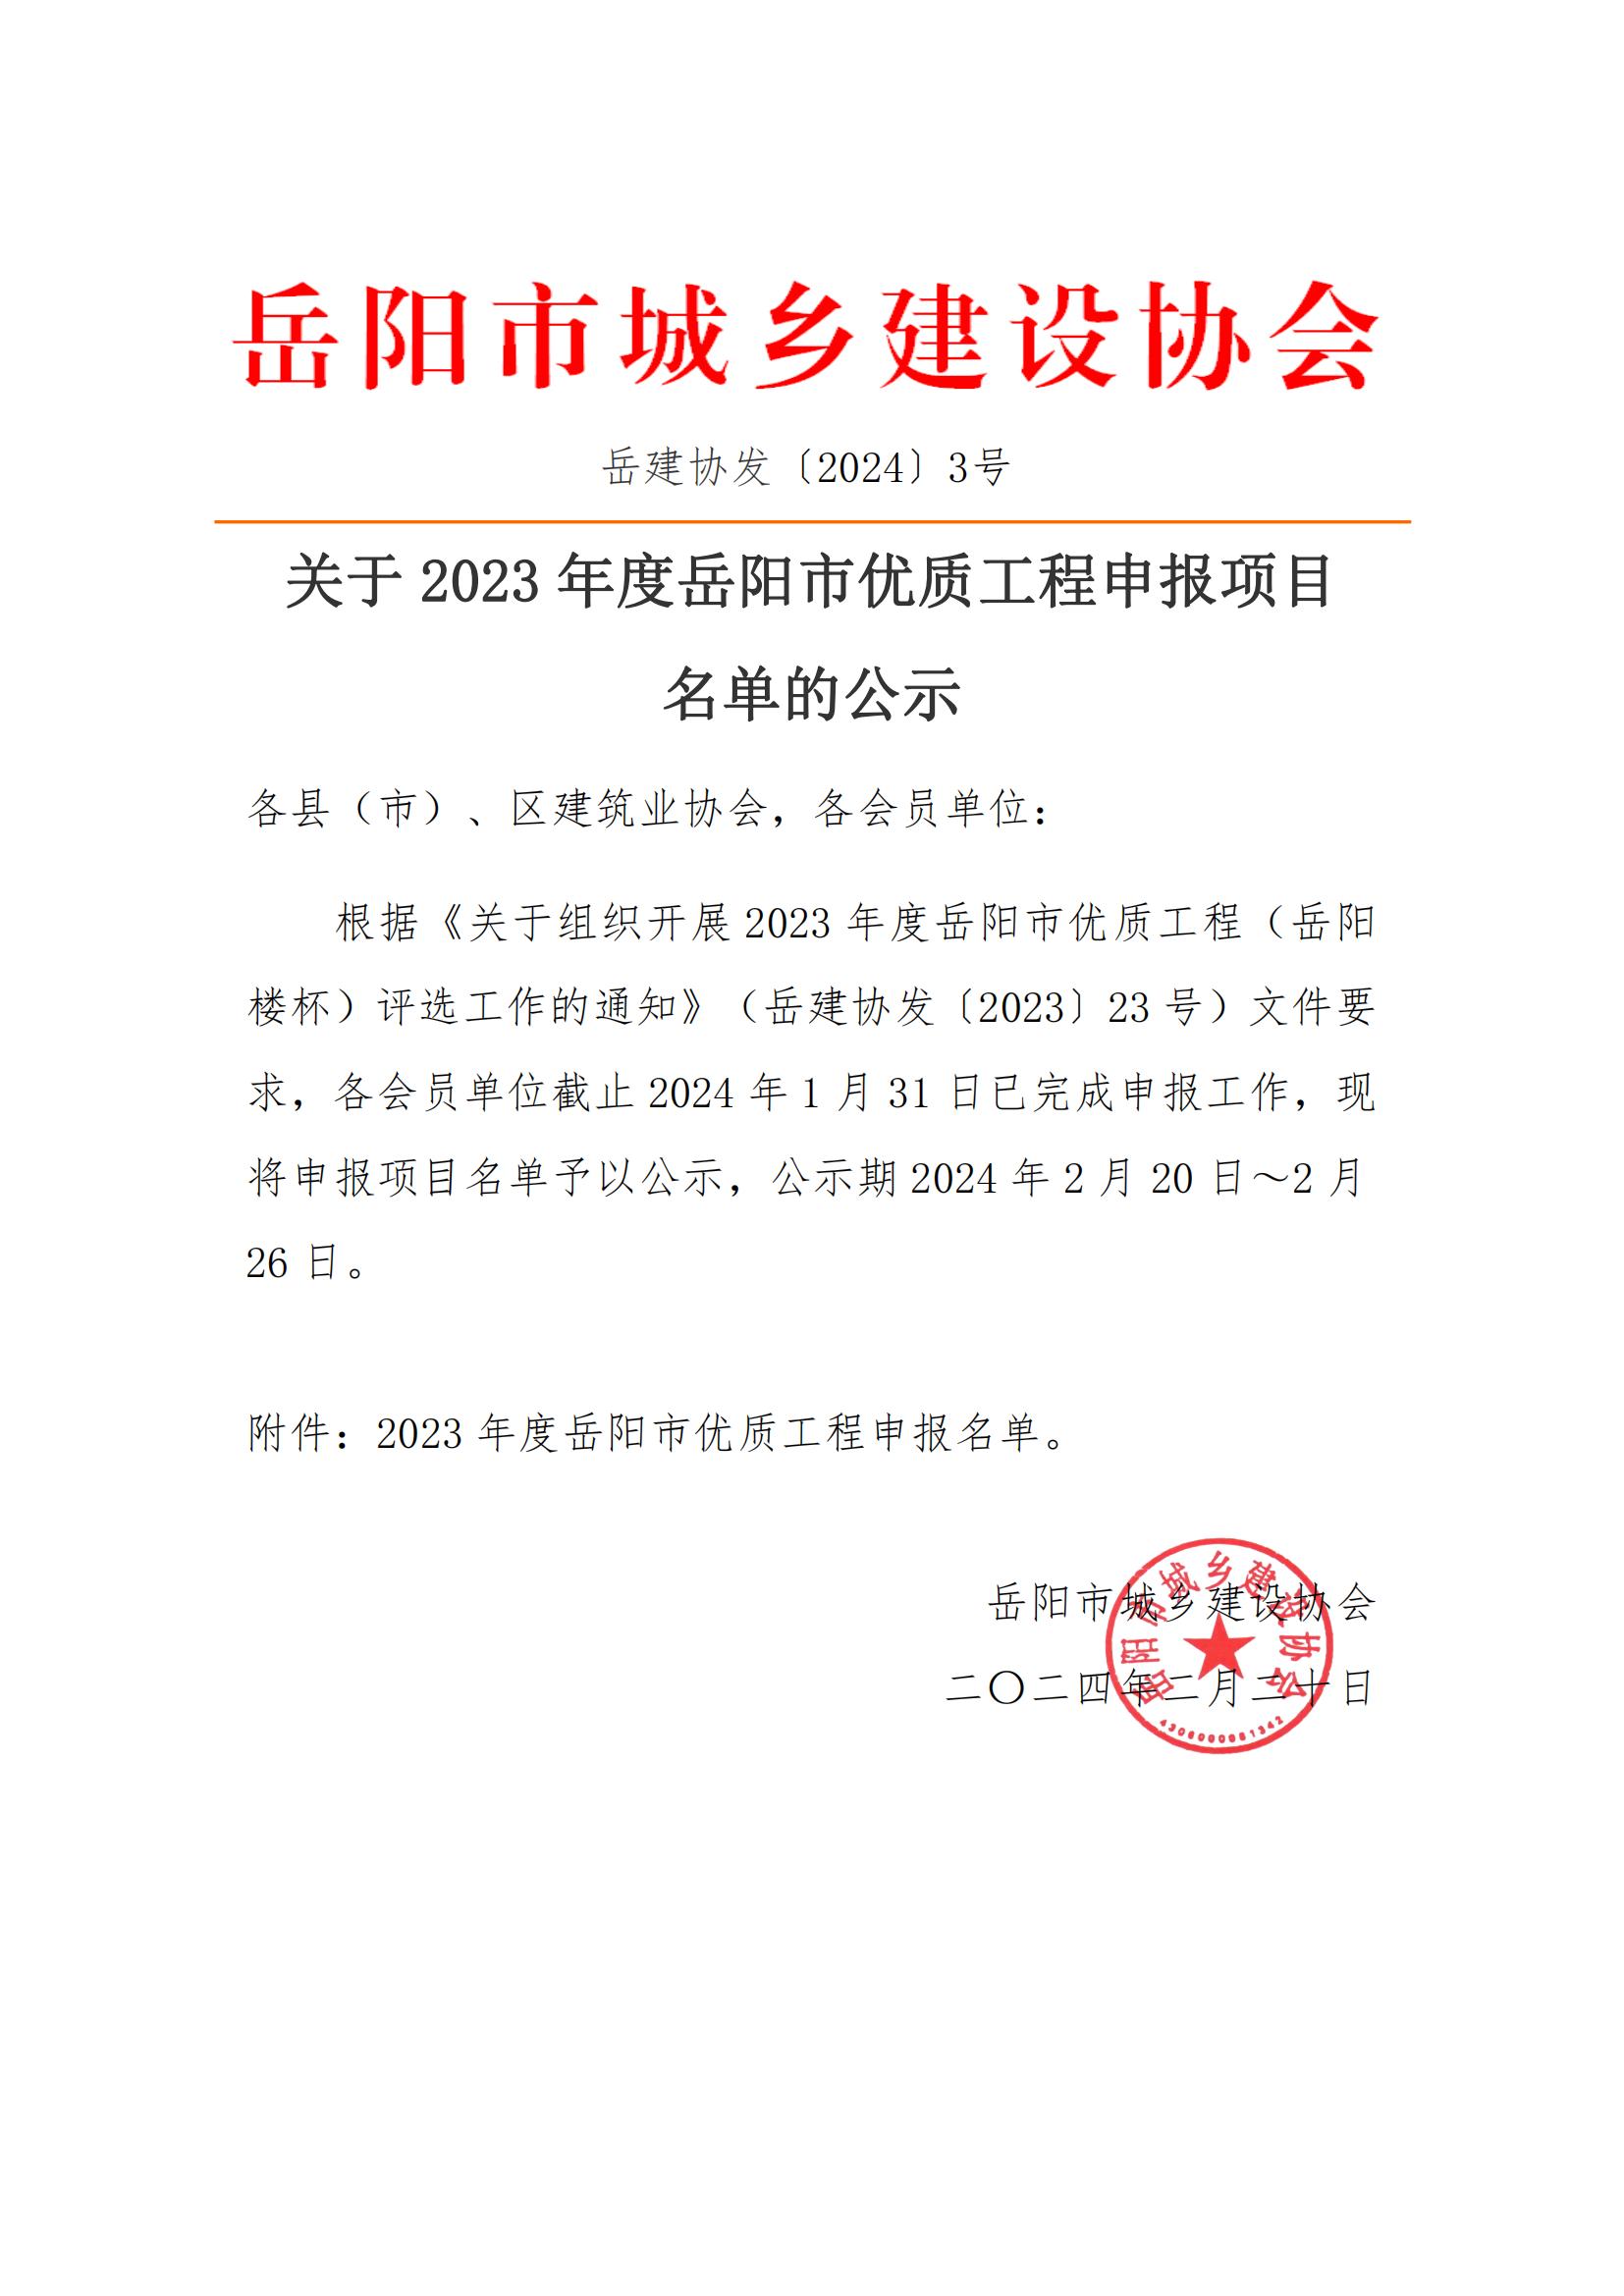 关于2023年度岳阳市优质工程申报项目名单的公示_00